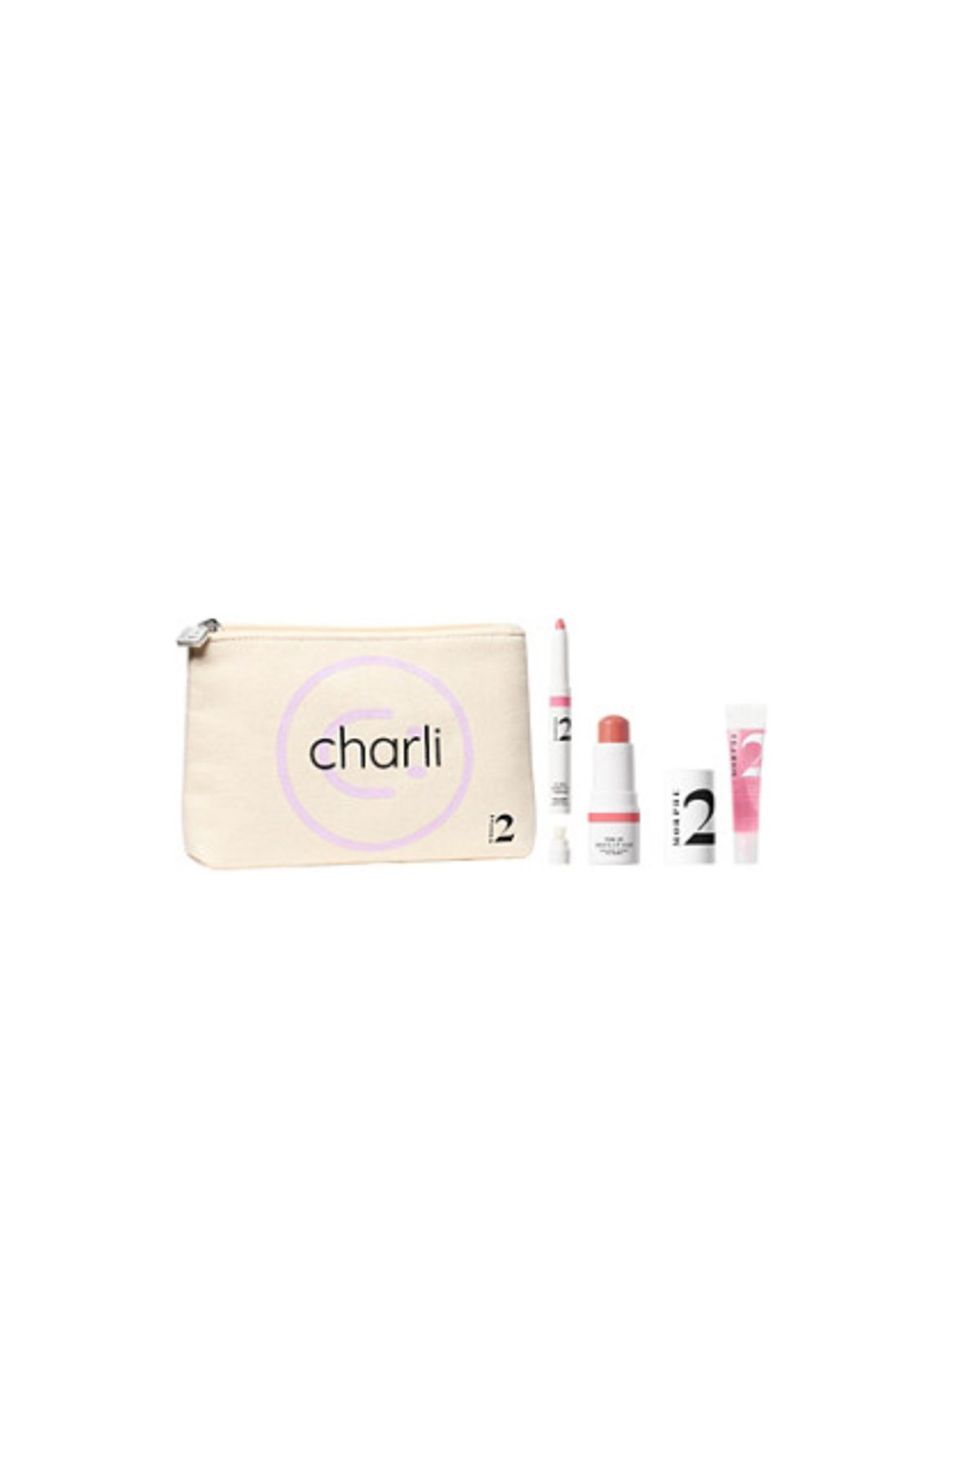 Morphe 2 Charli's Go-To Faves 3-Piece Makeup Set + Bag